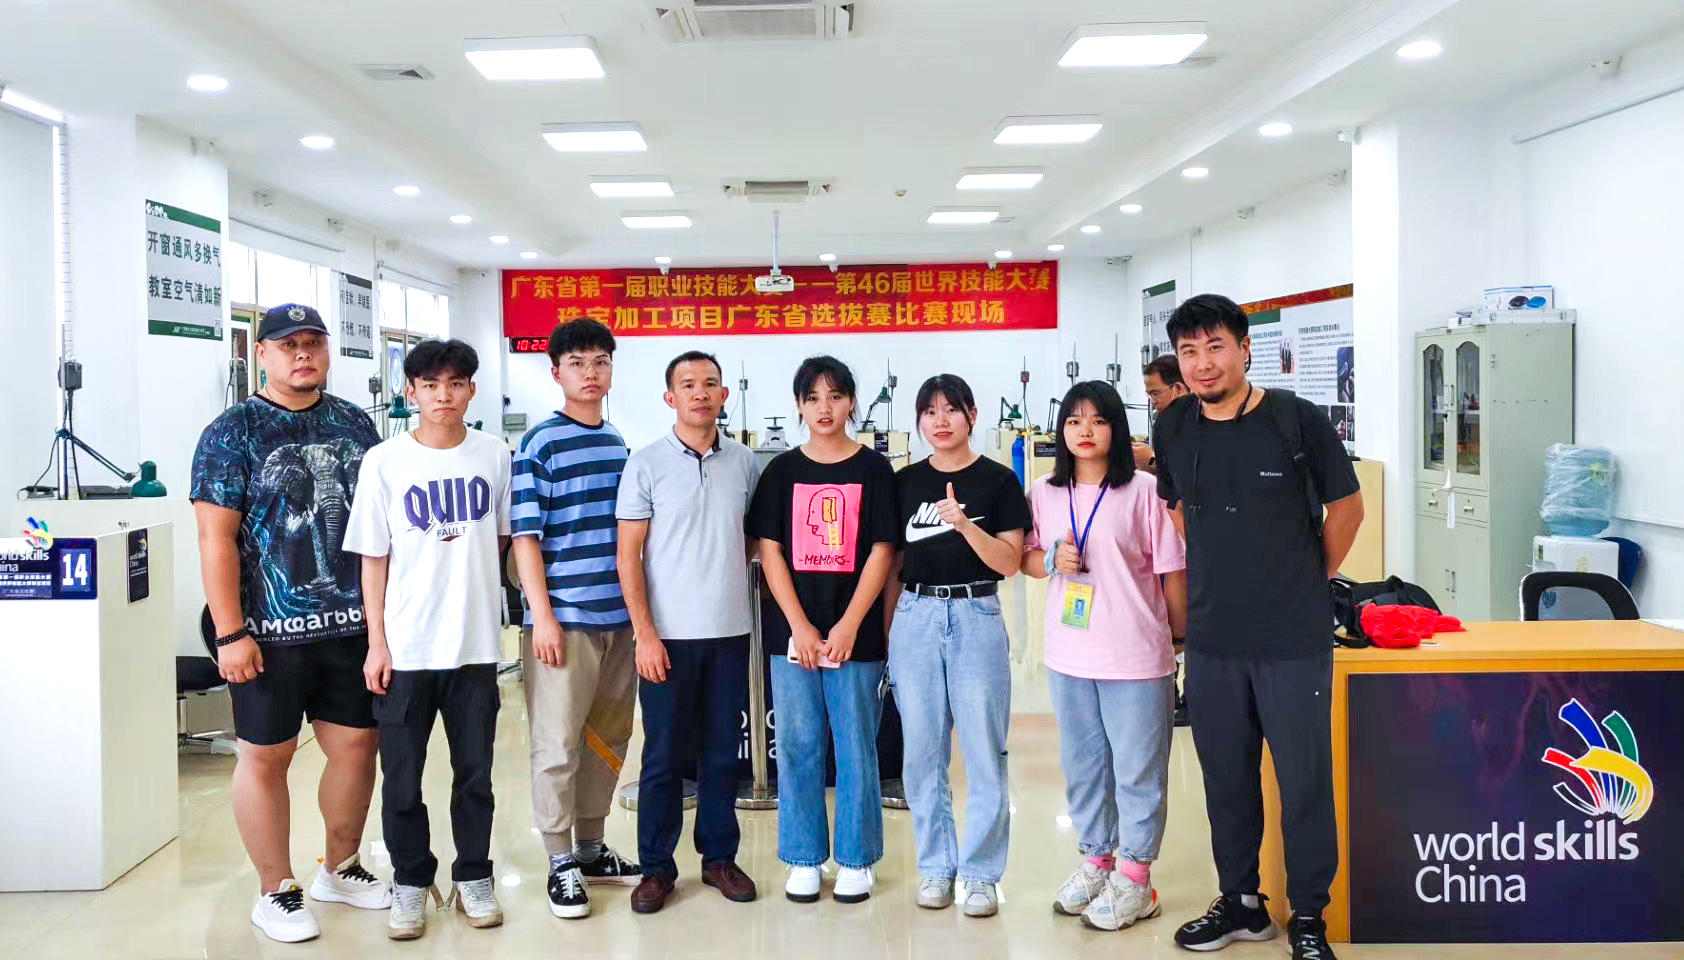 郑敬诒职校学生参加第46届世界技能大赛广东选拔赛